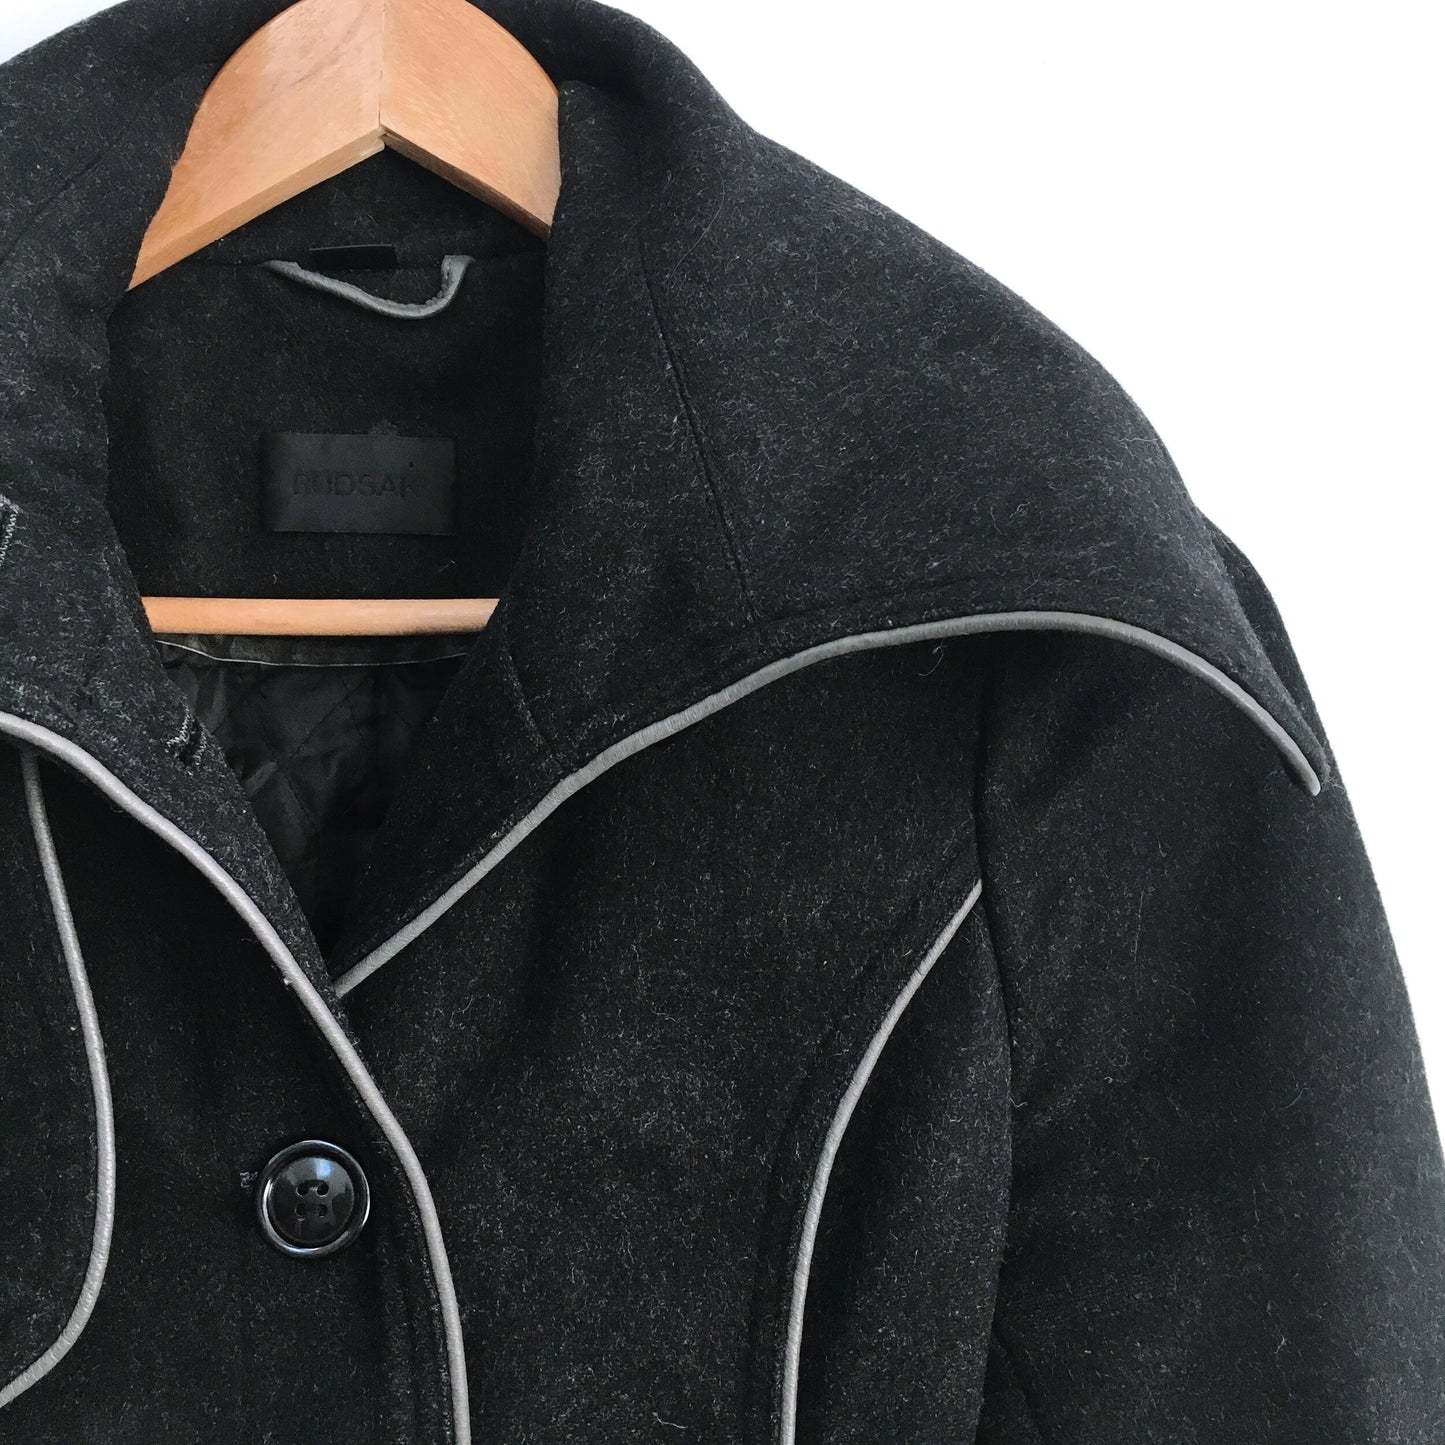 Rudsak Wool Jacket with Leather trim - size xs